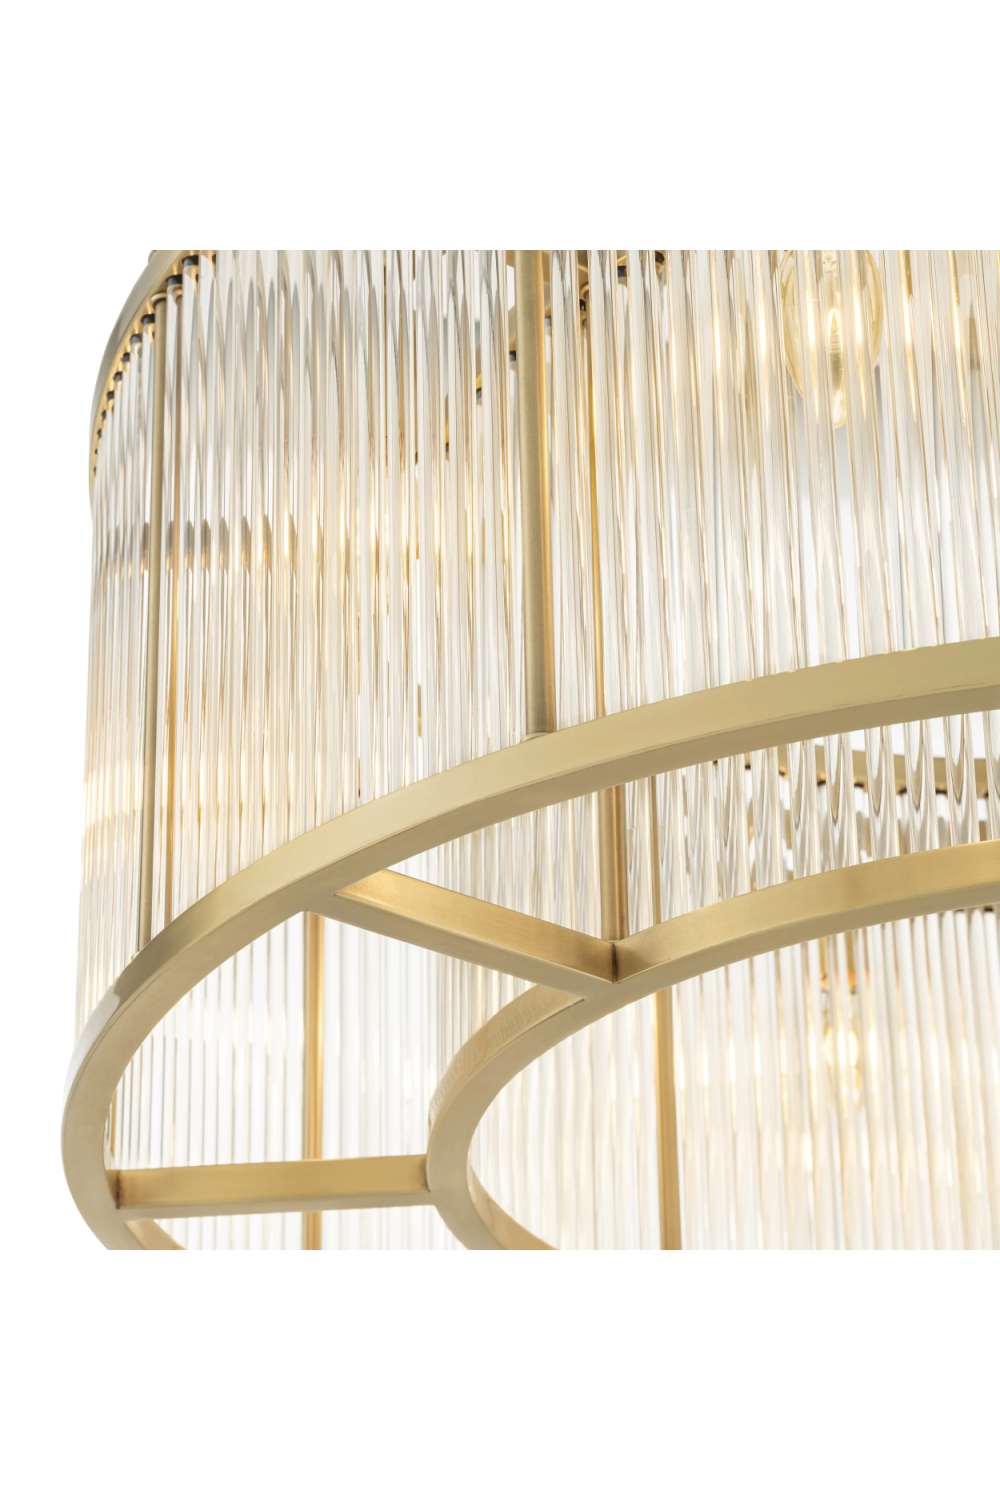 Glass Drum Shaped Ceiling Lamp | Eichholtz Bernardi | Oroatrade.com